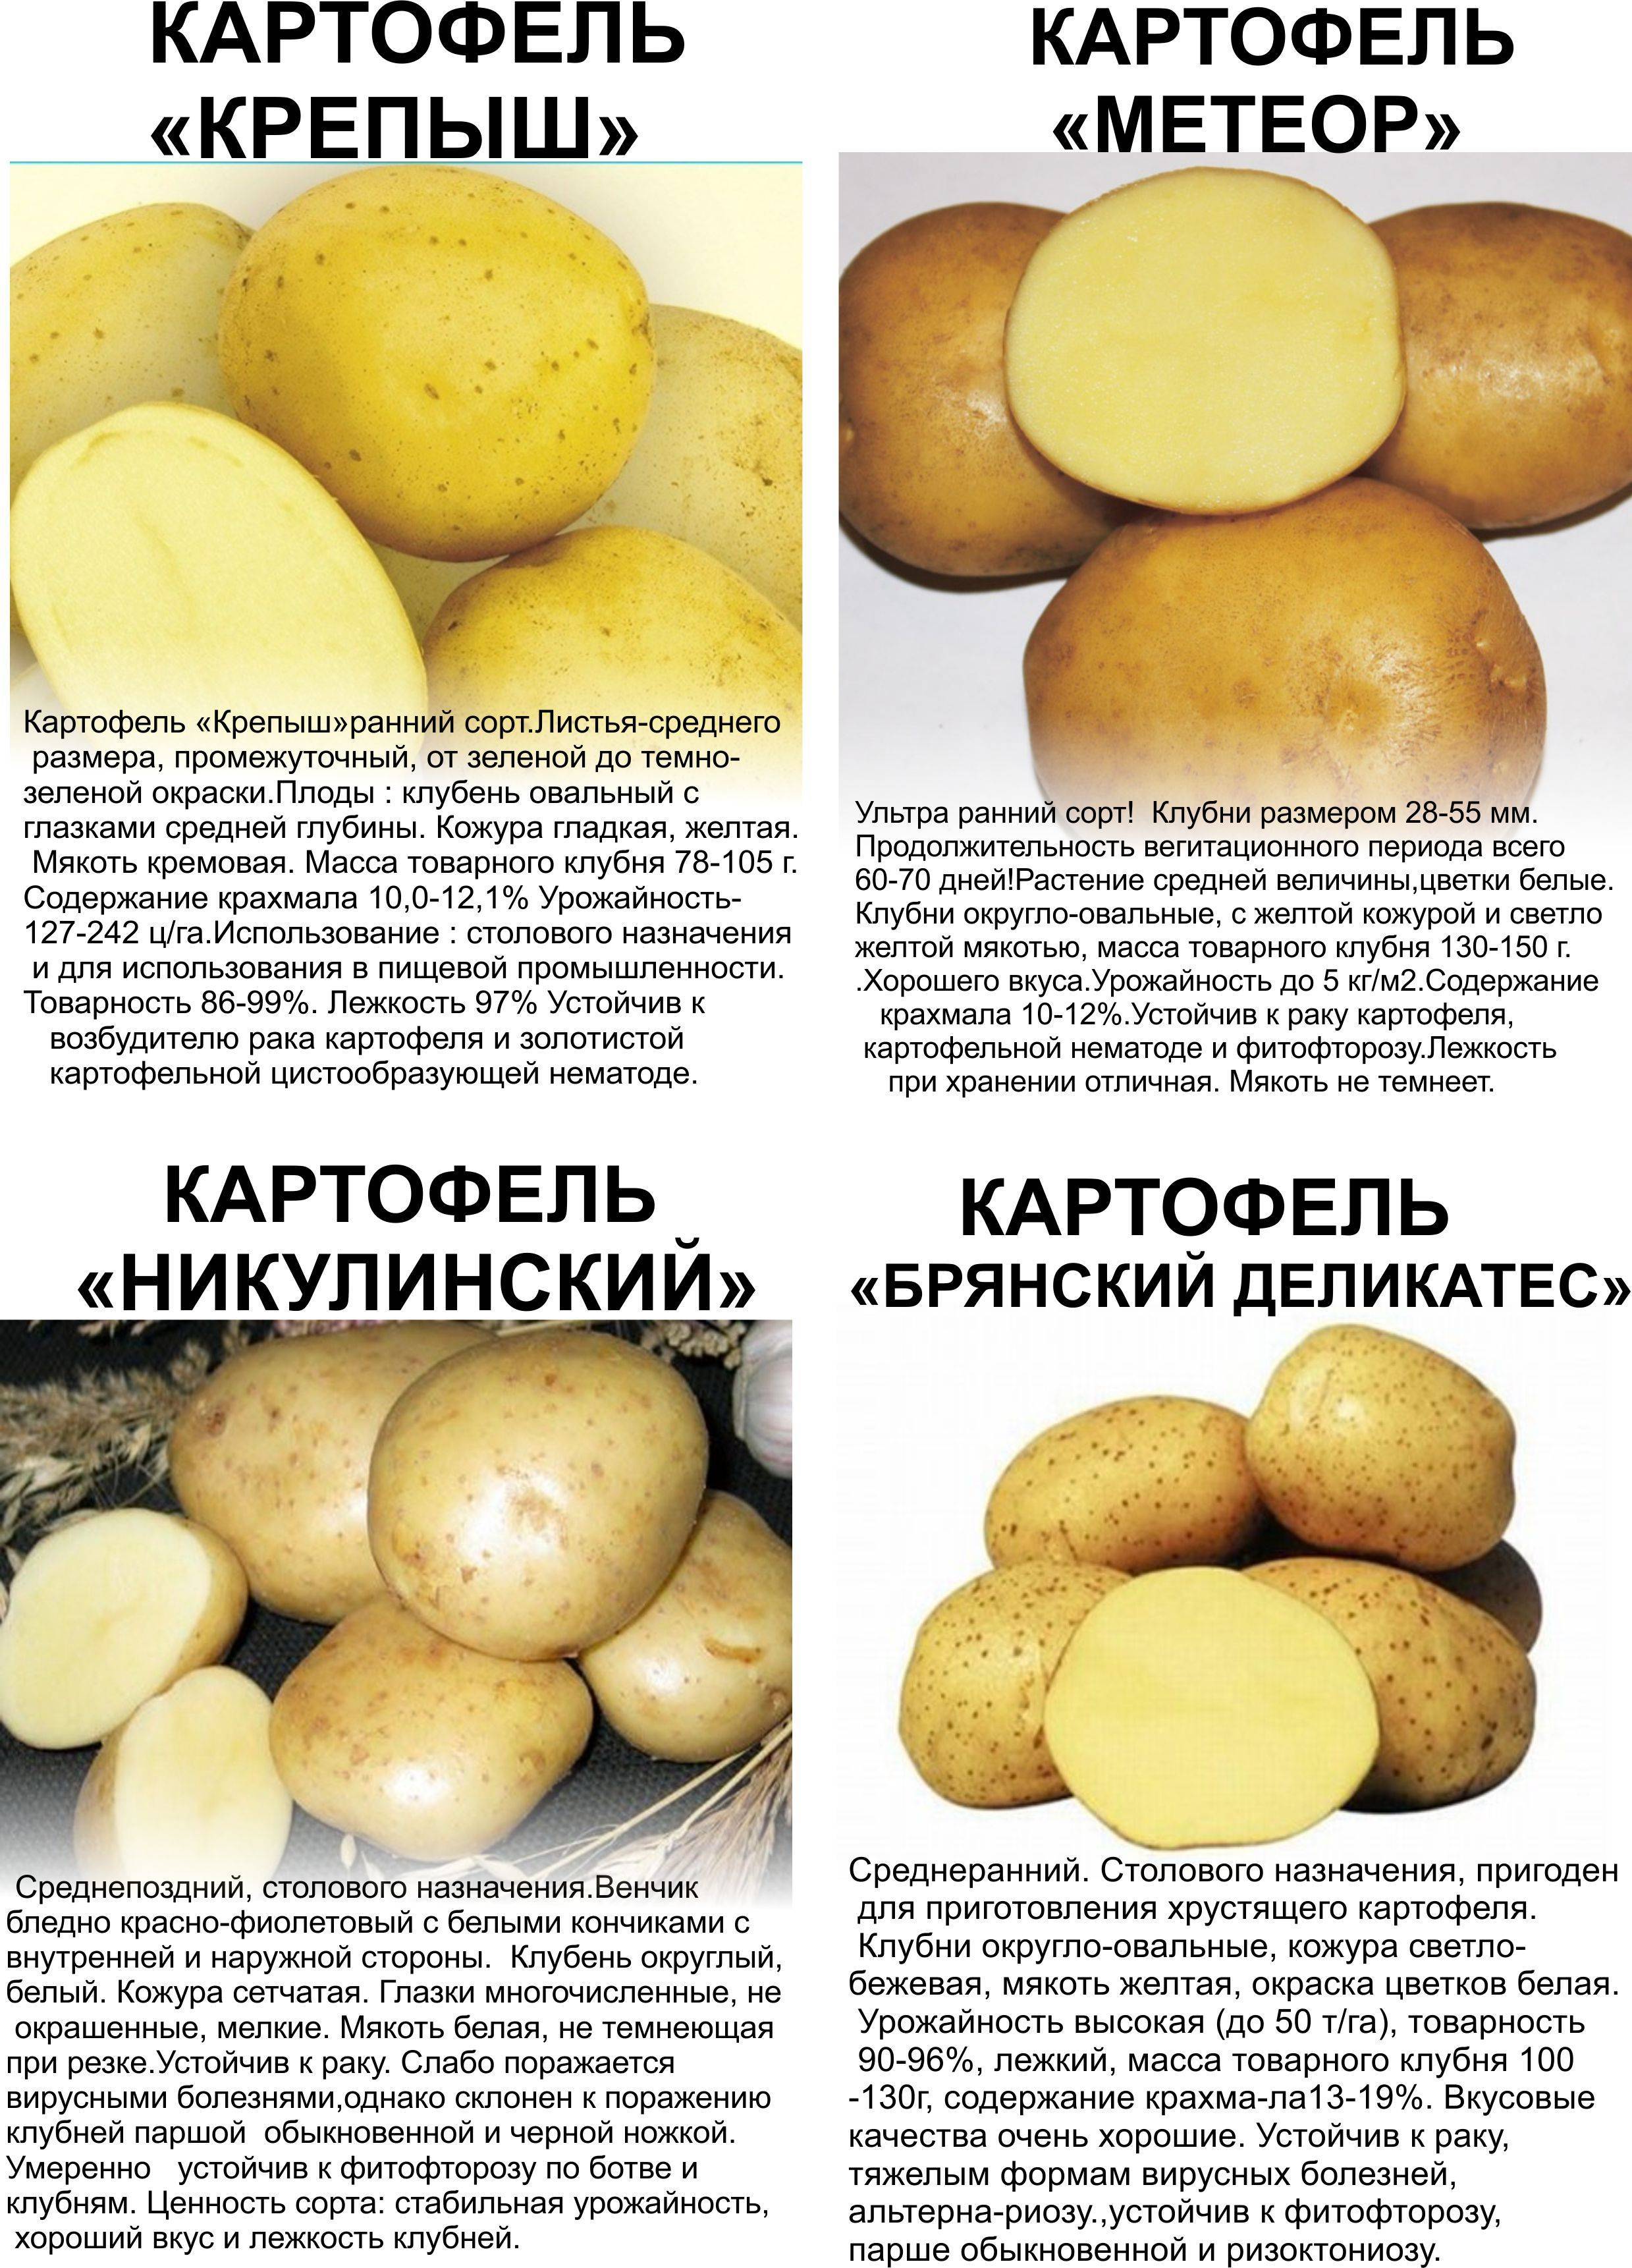 Сорт картофеля "вектор" - характеристики и описание